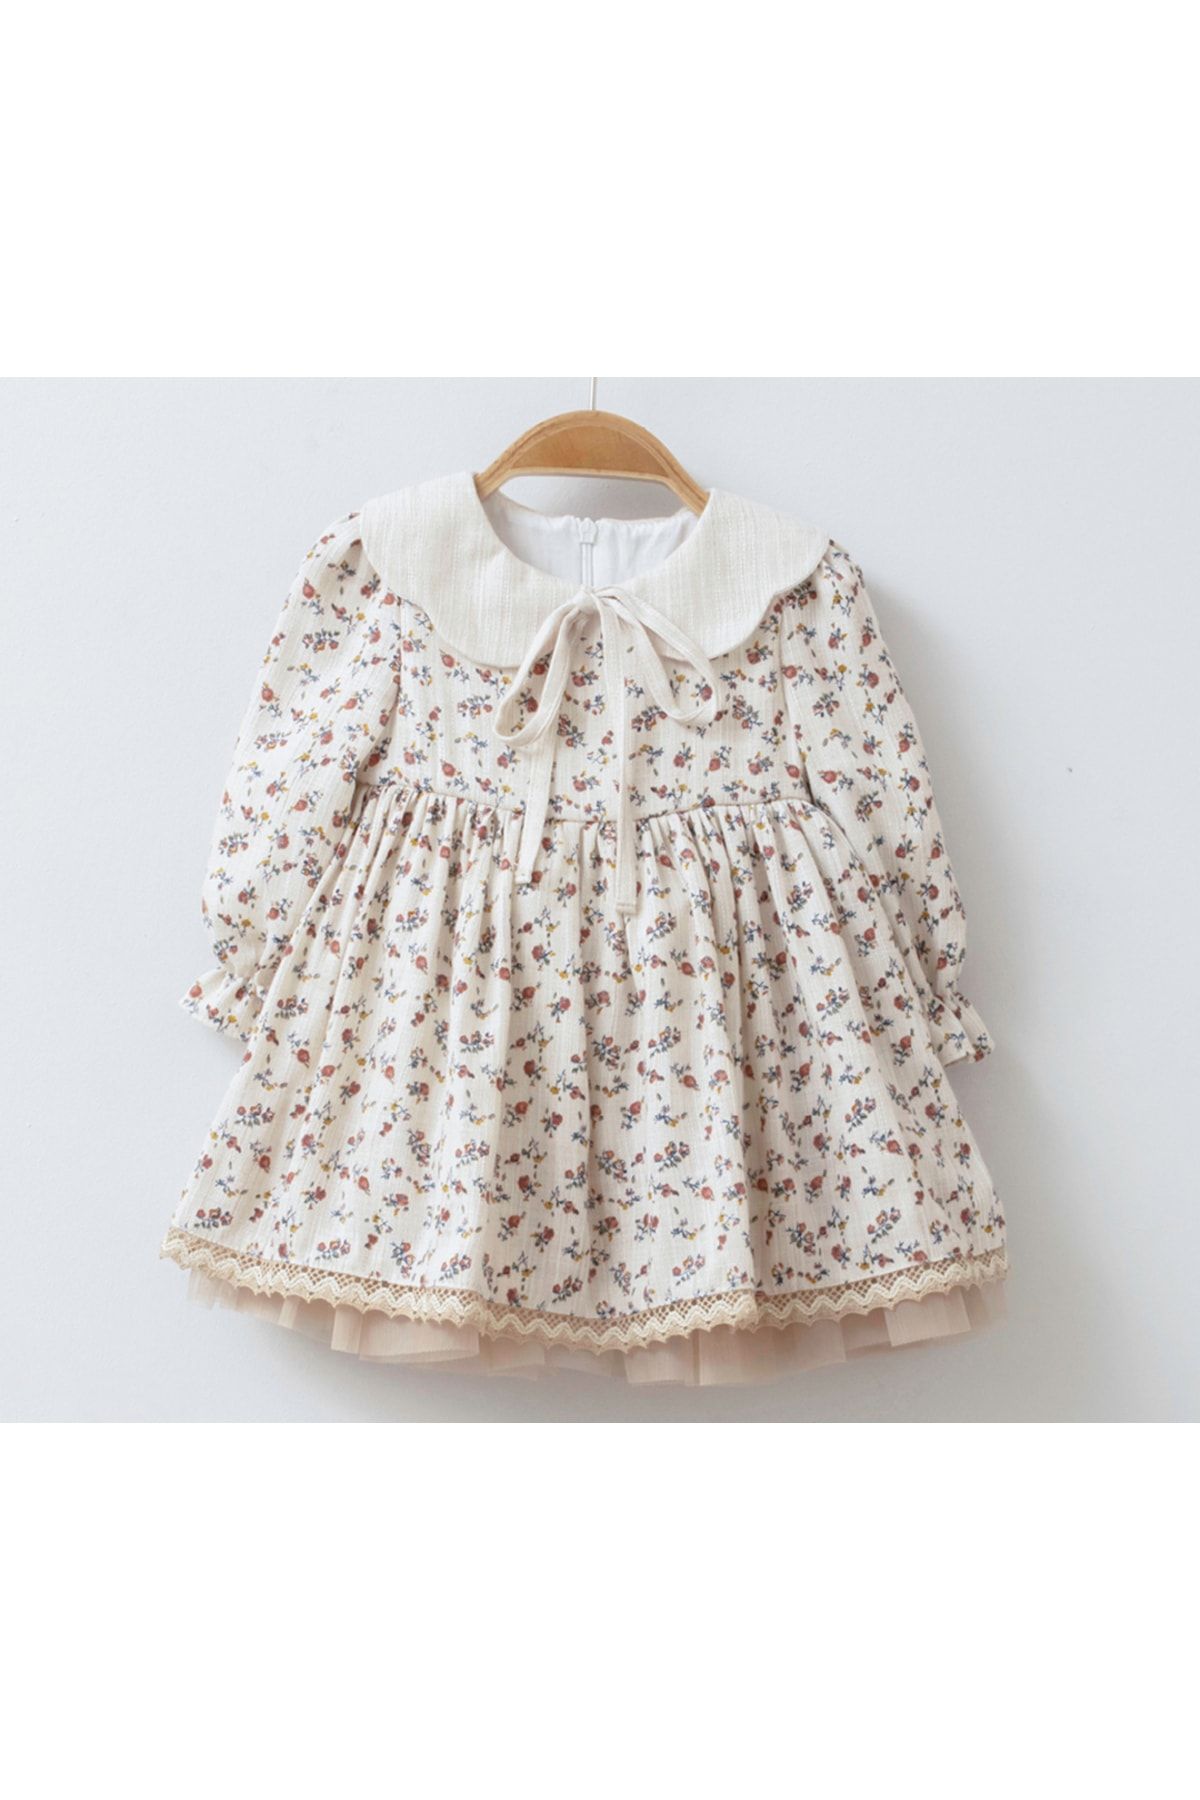 Mymio Kahverengi Kız Bebek Naturel Çiçekli Yaka Detaylı Müslin Elbise